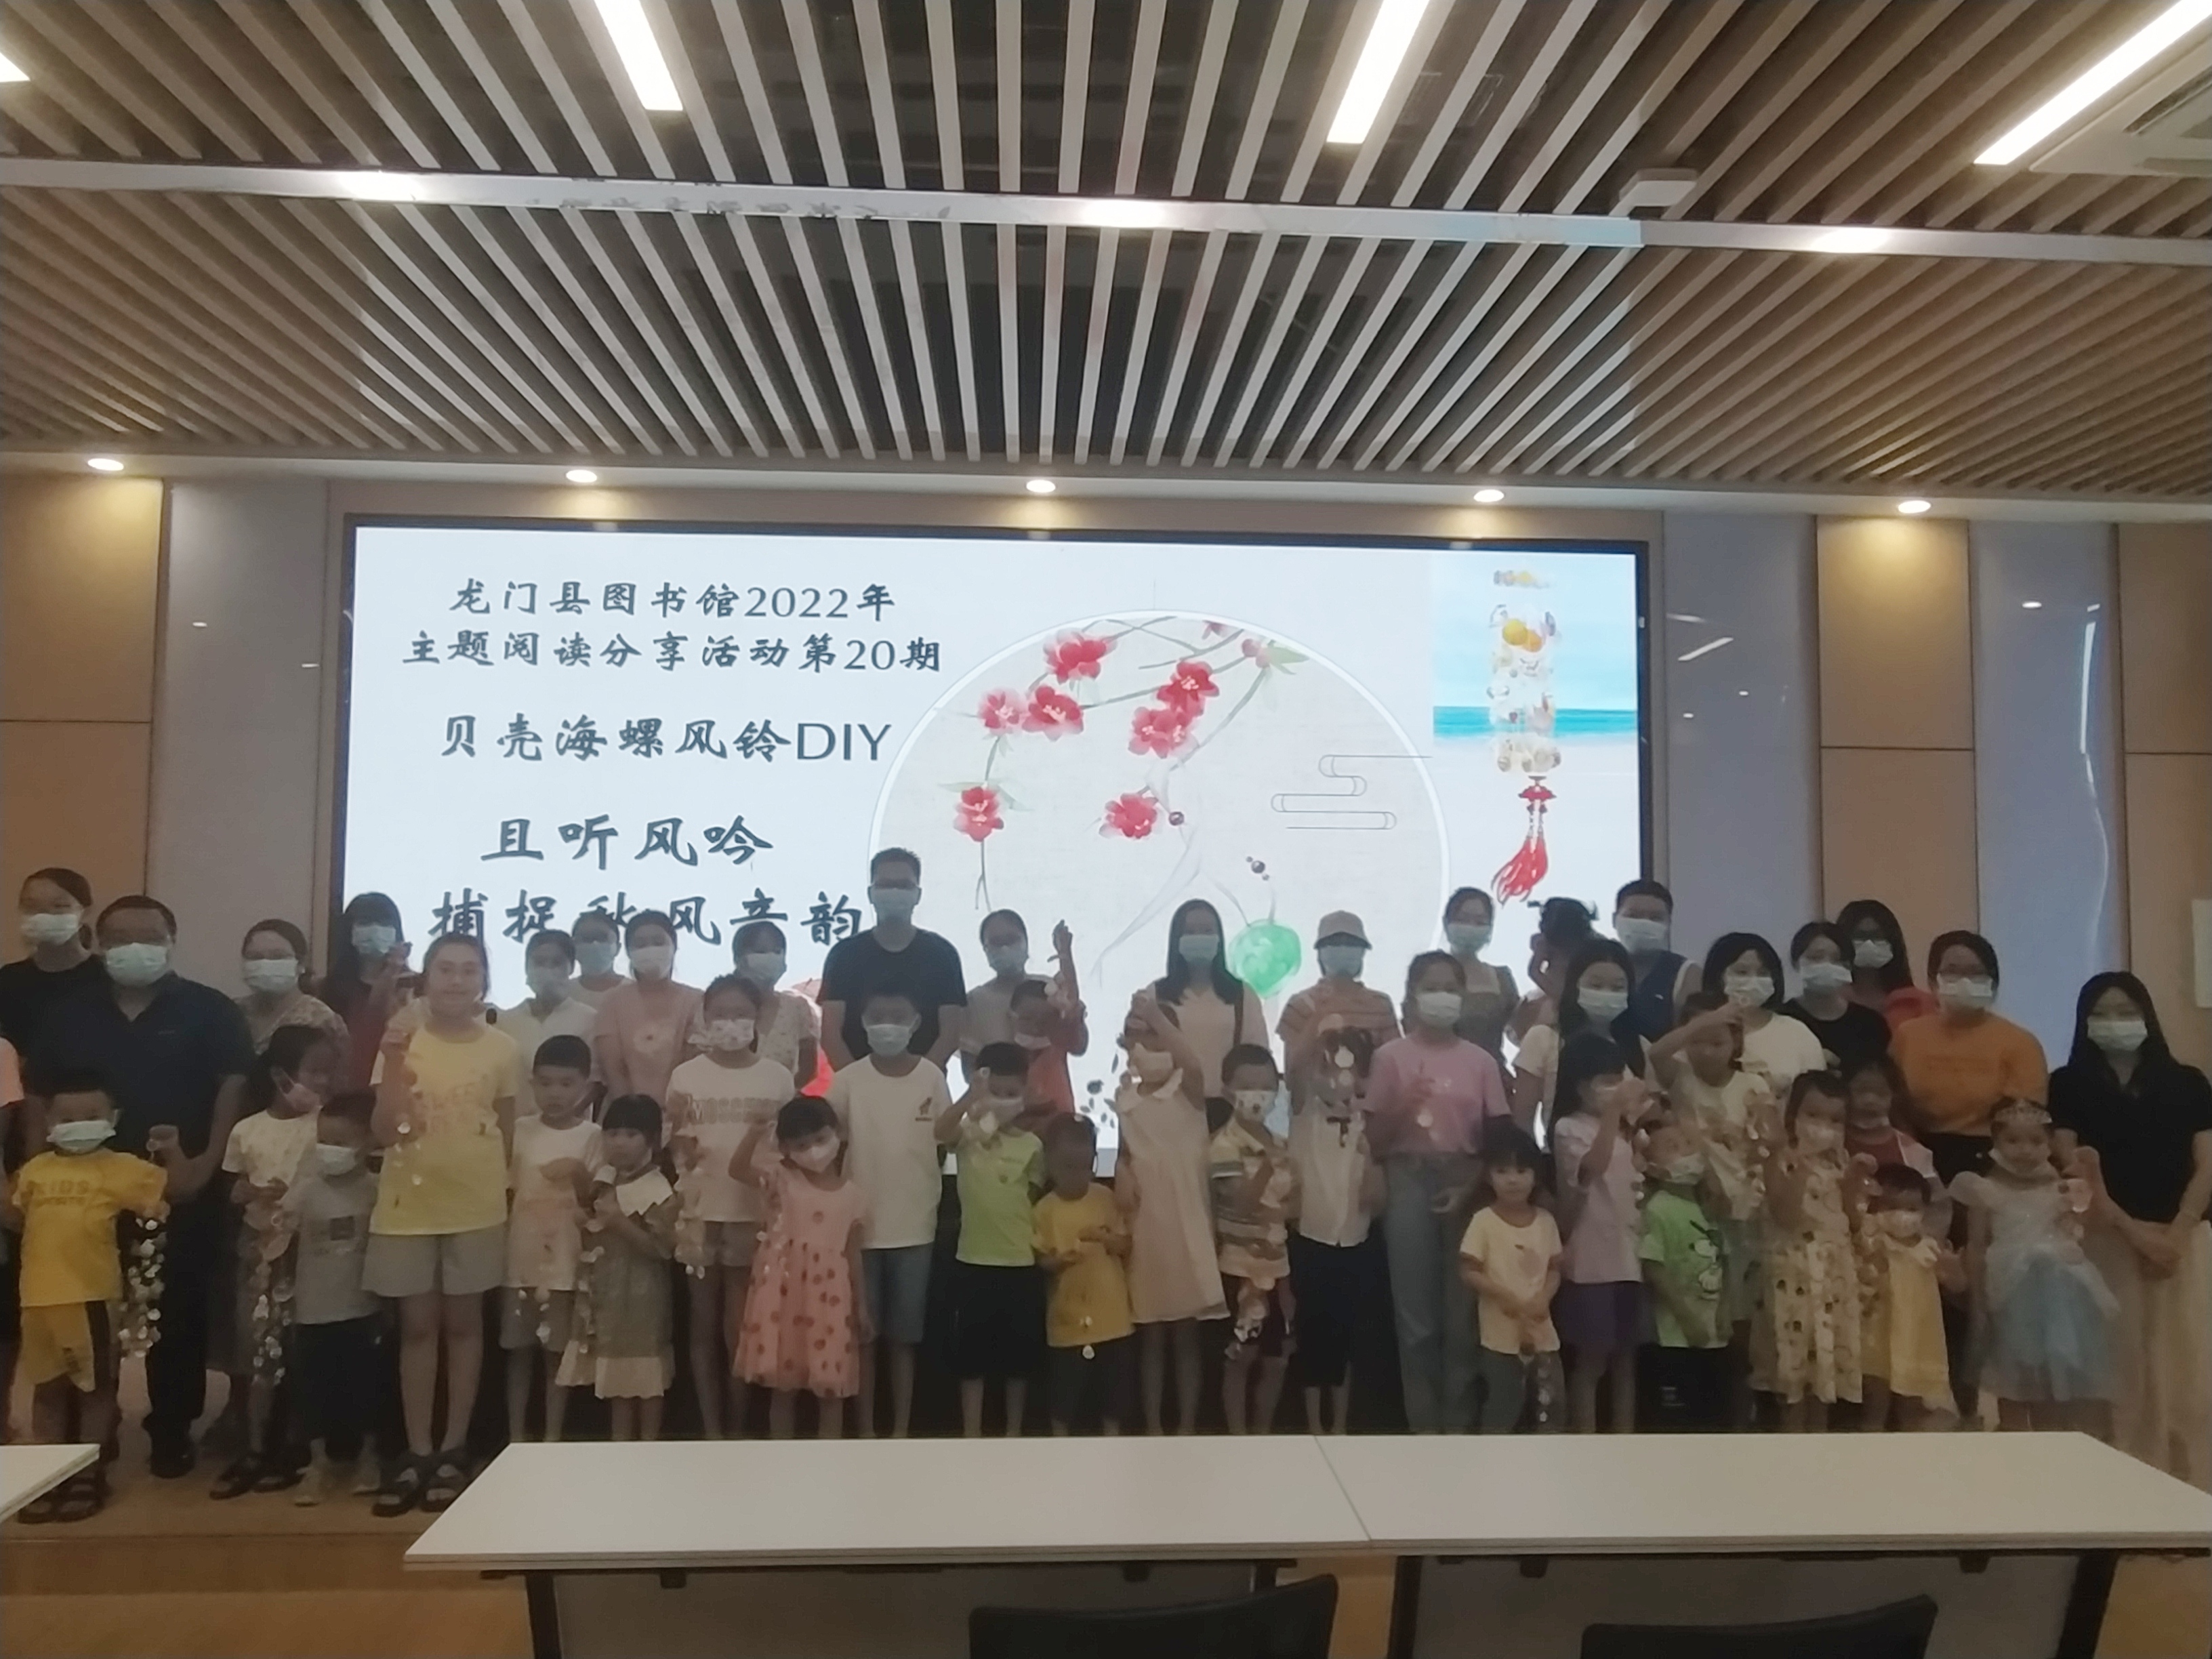 亲子活动贝壳海螺风铃DIY——龙门县图书馆2022年主题阅读分享活动第20期